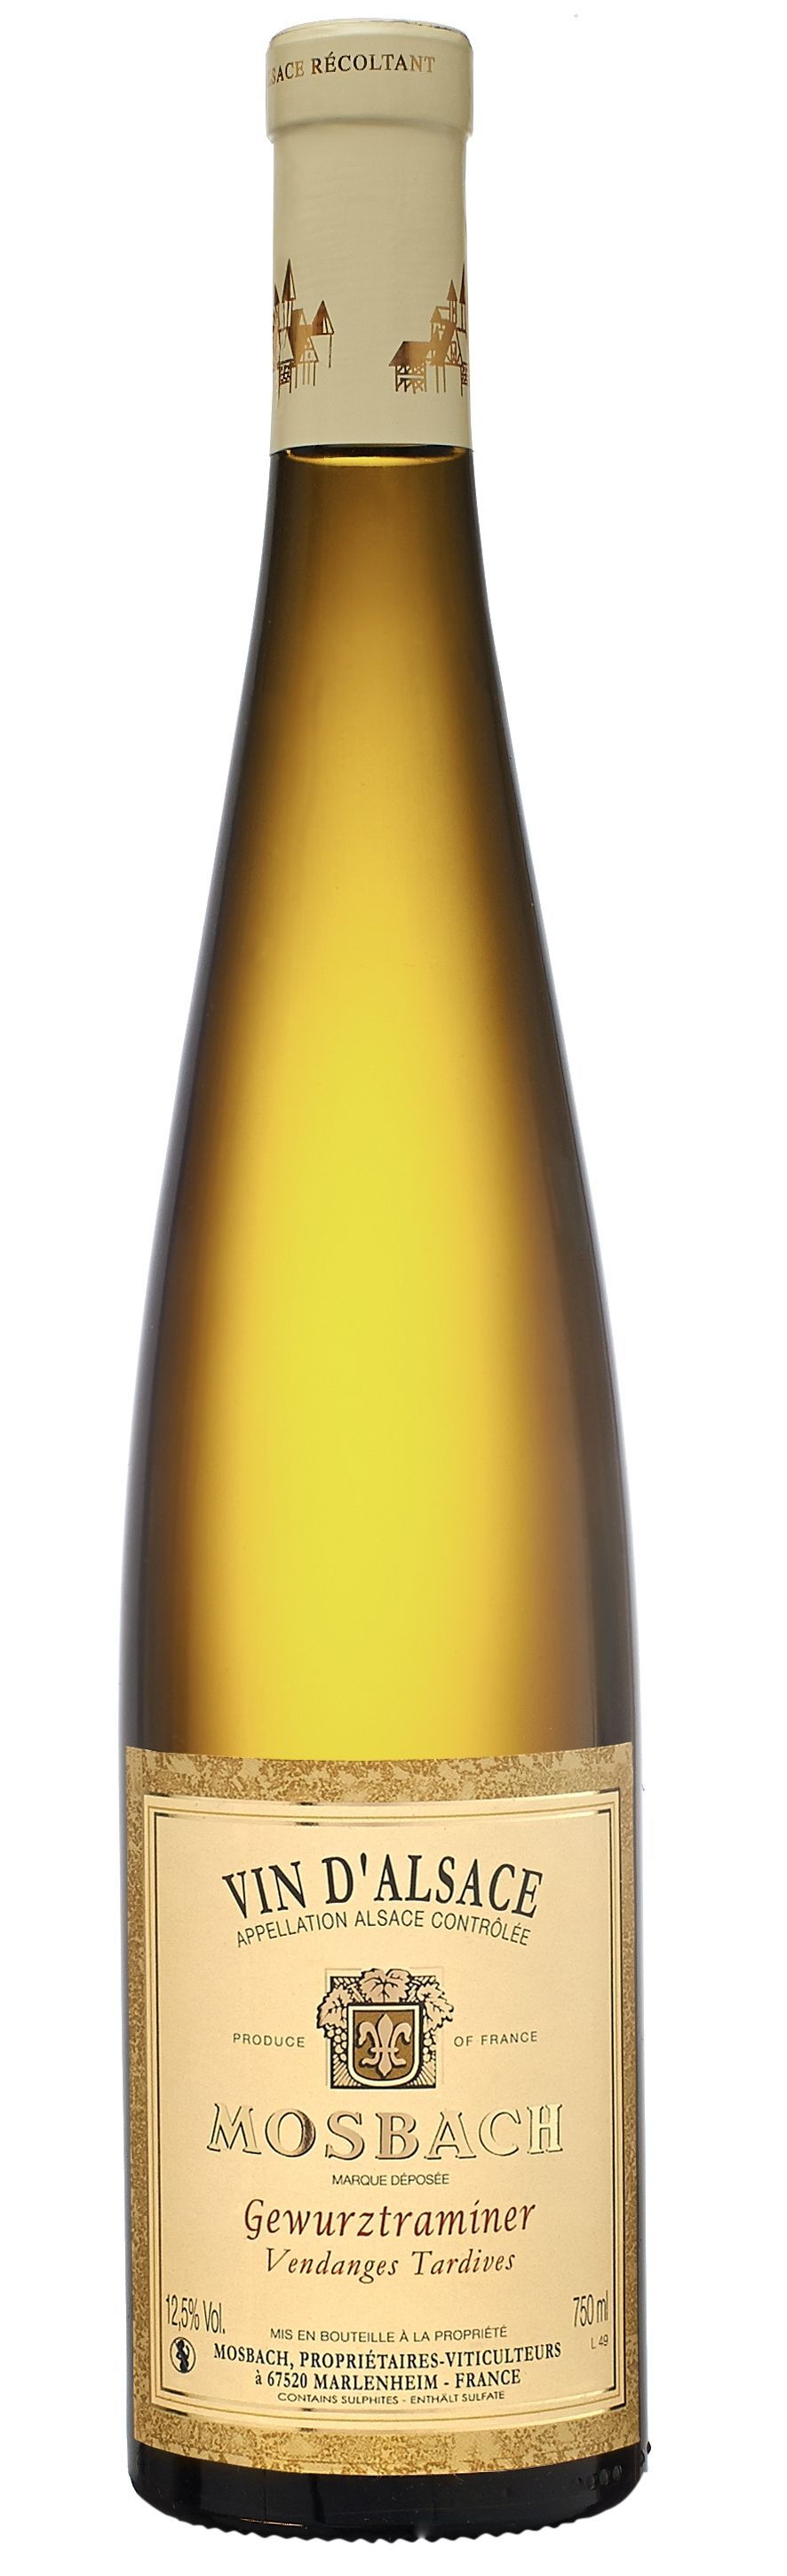 EARL MOSBACH (MARLENHEIM) Gewurztraminer Vendanges Tardives Mosbach, White, 2018, Alsace ou Vin d'Alsace. Bottle image